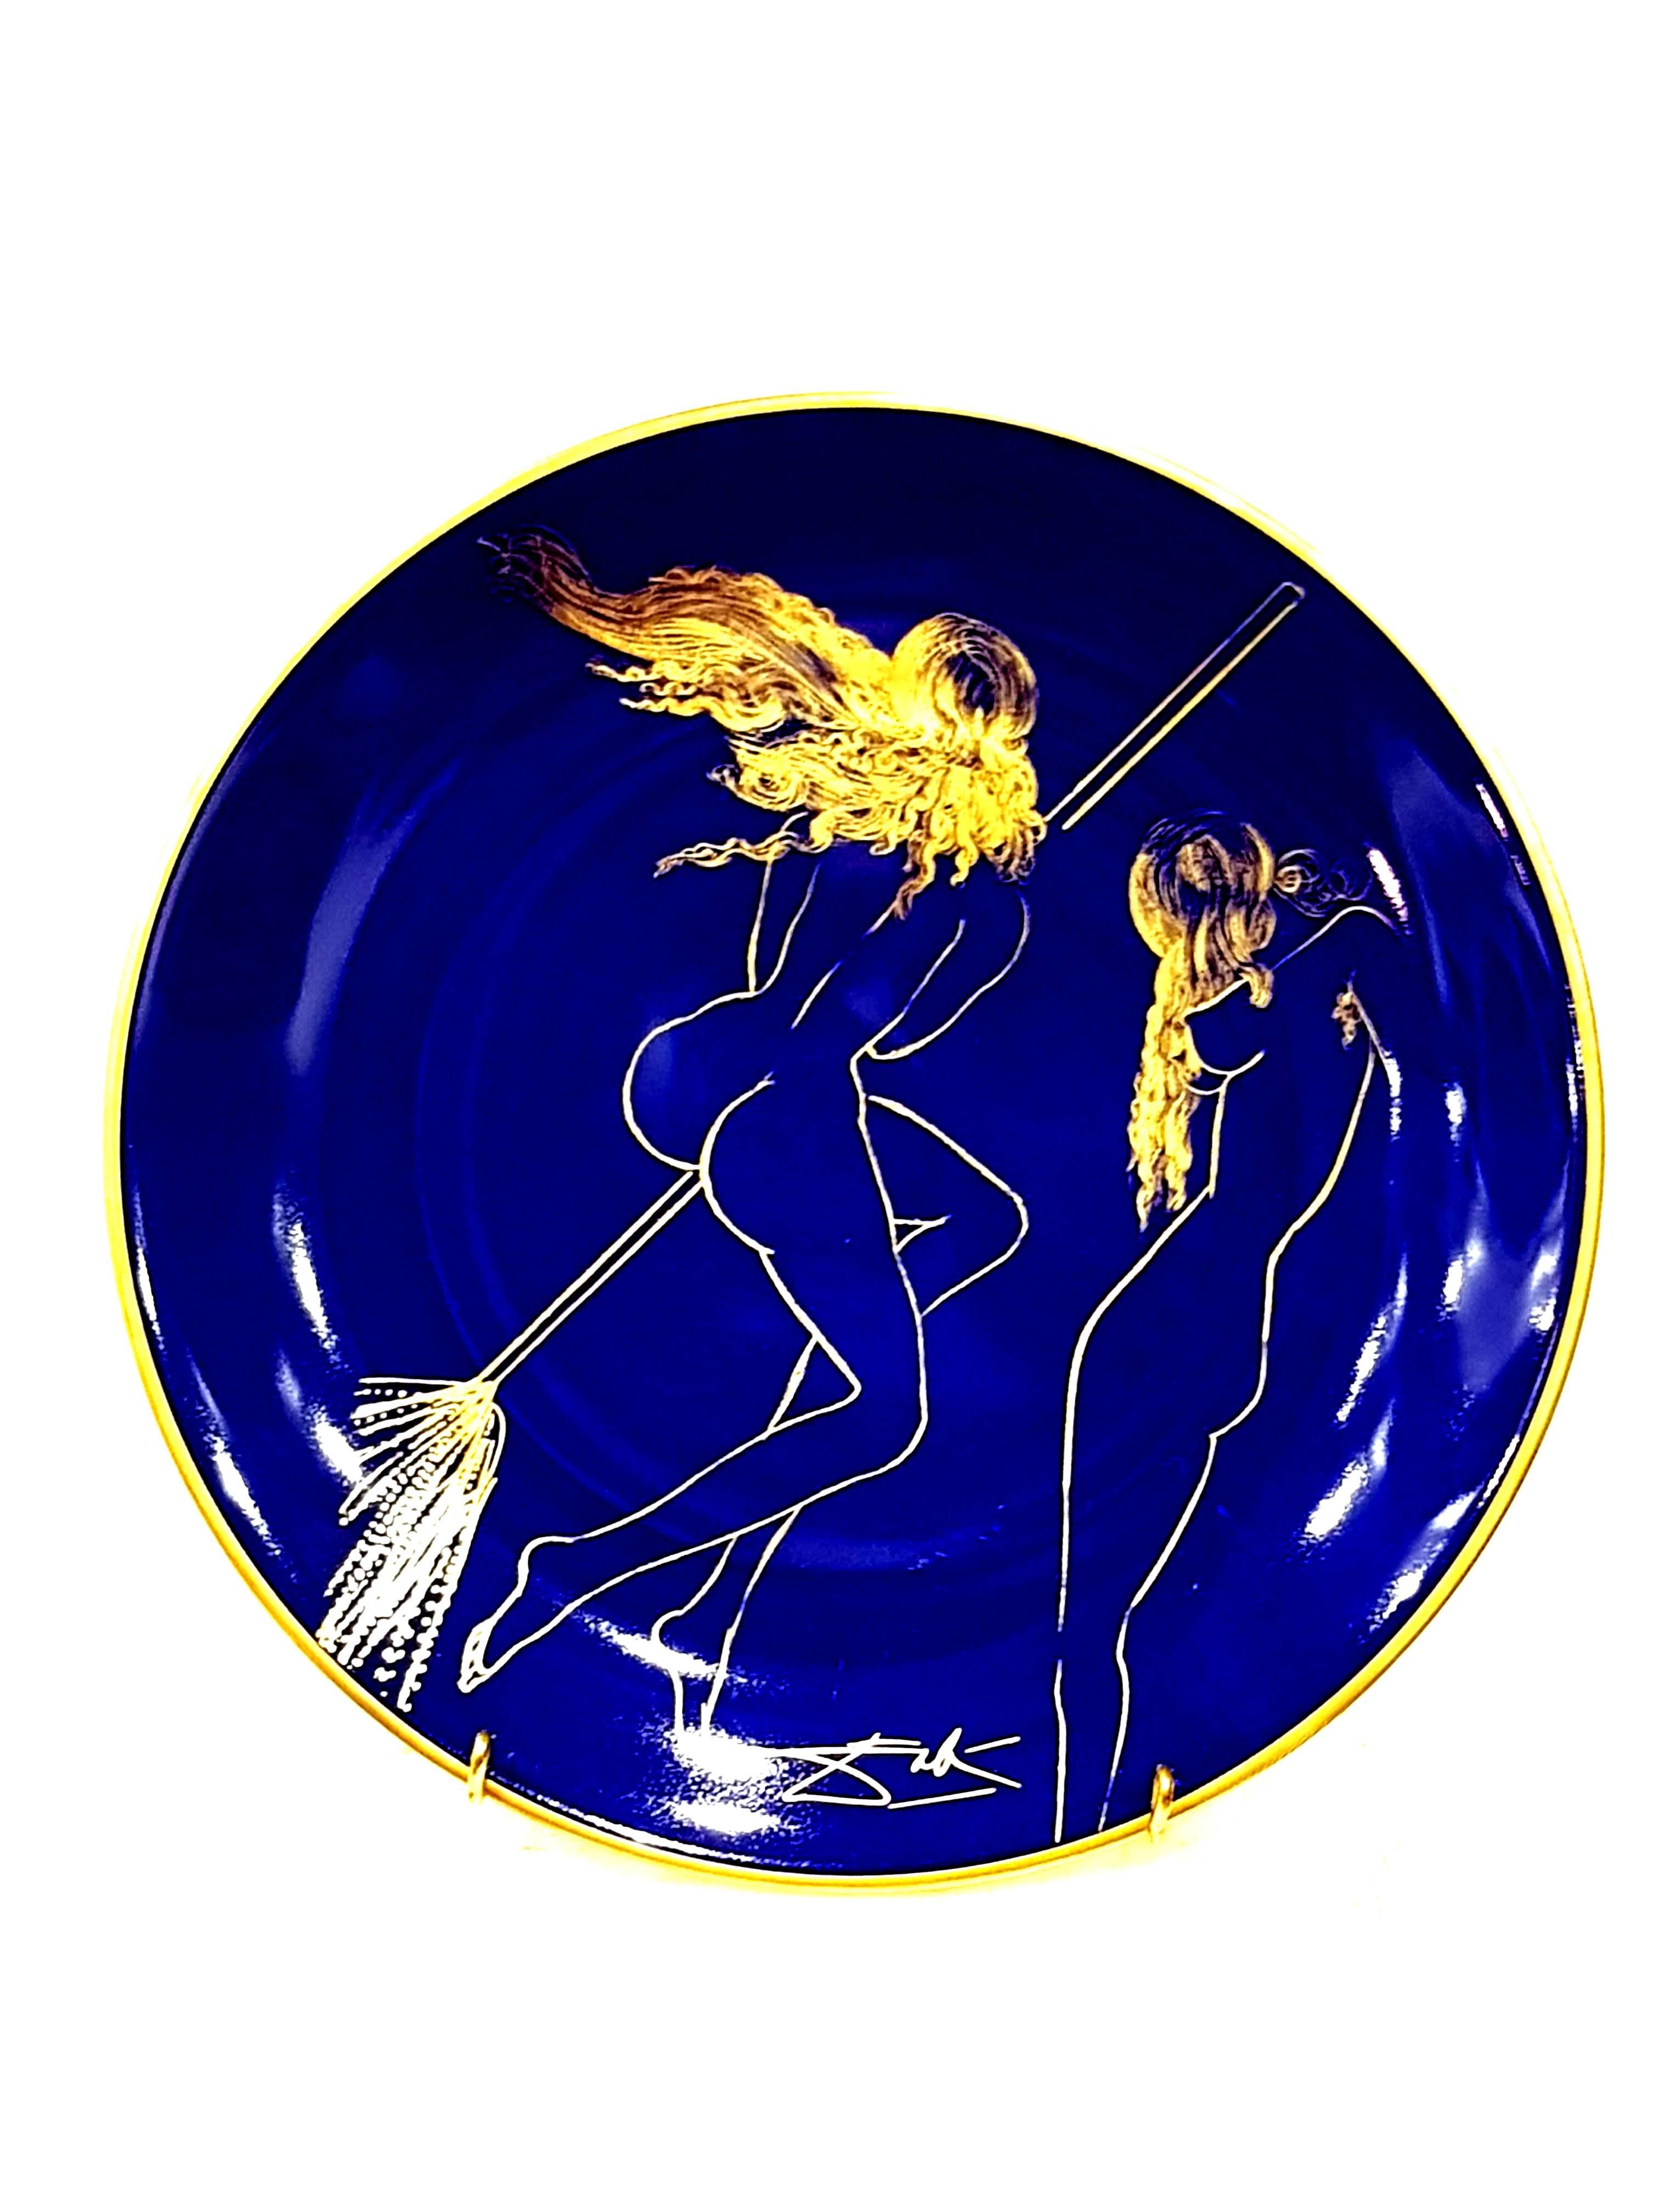 Sabat - Limoges Porcelain Blue and Gold - Mixed Media Art by (after) Salvador Dali